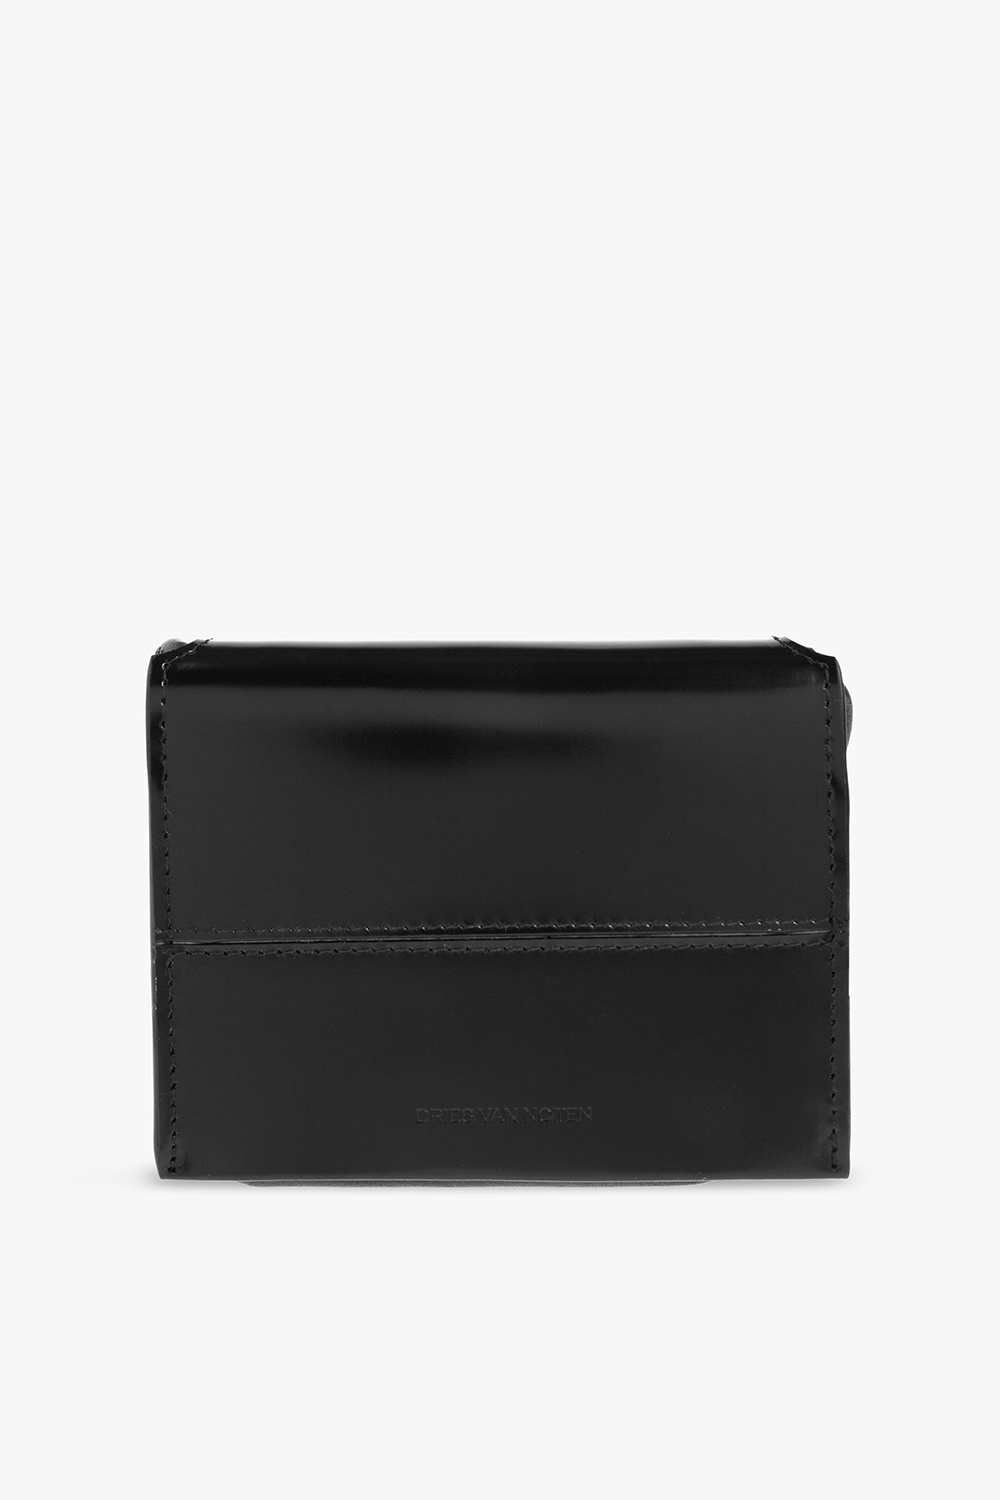 Dries Van Noten Strapped wallet